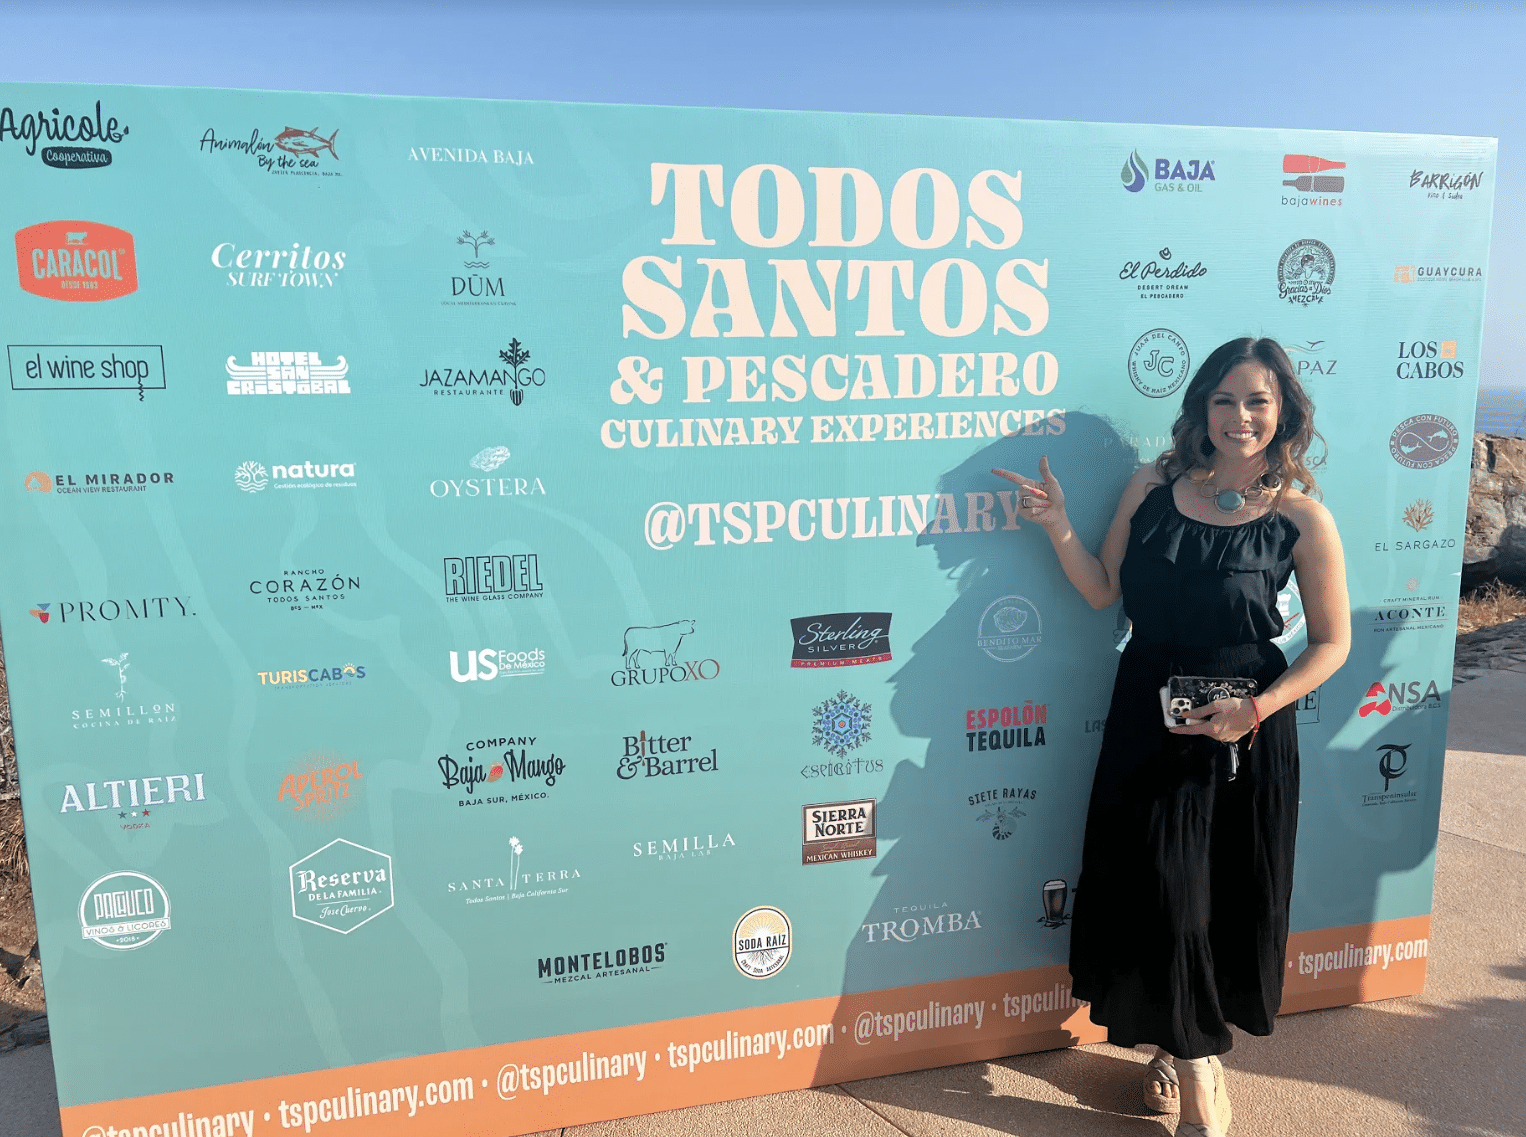 Amparo García Referente de Gastronomía en Los Cabos.